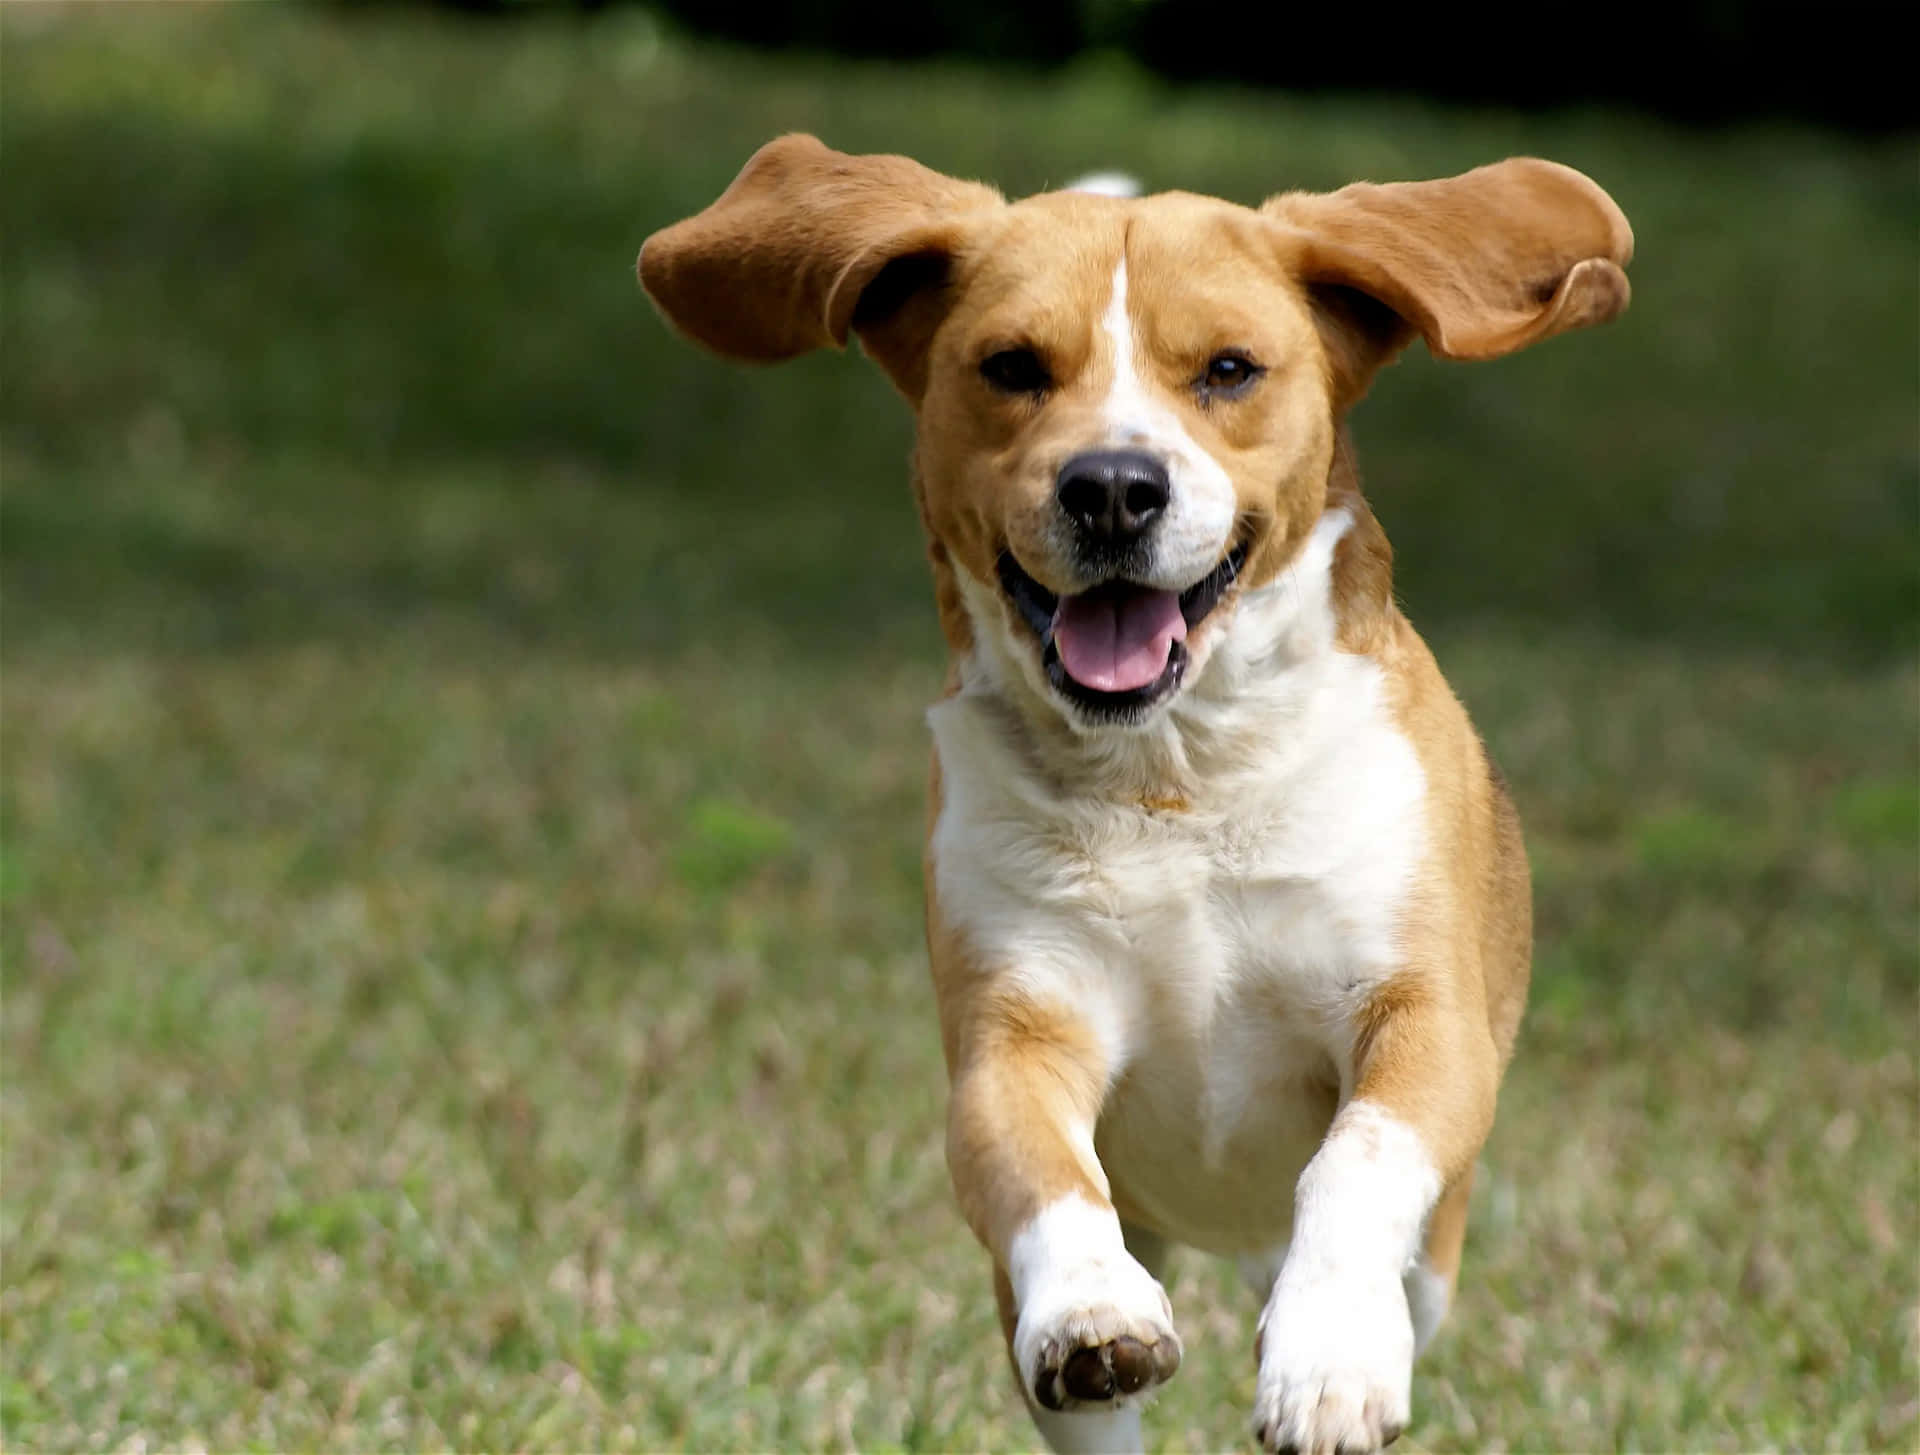 Laufendesbild Eines Beagle-hundes.